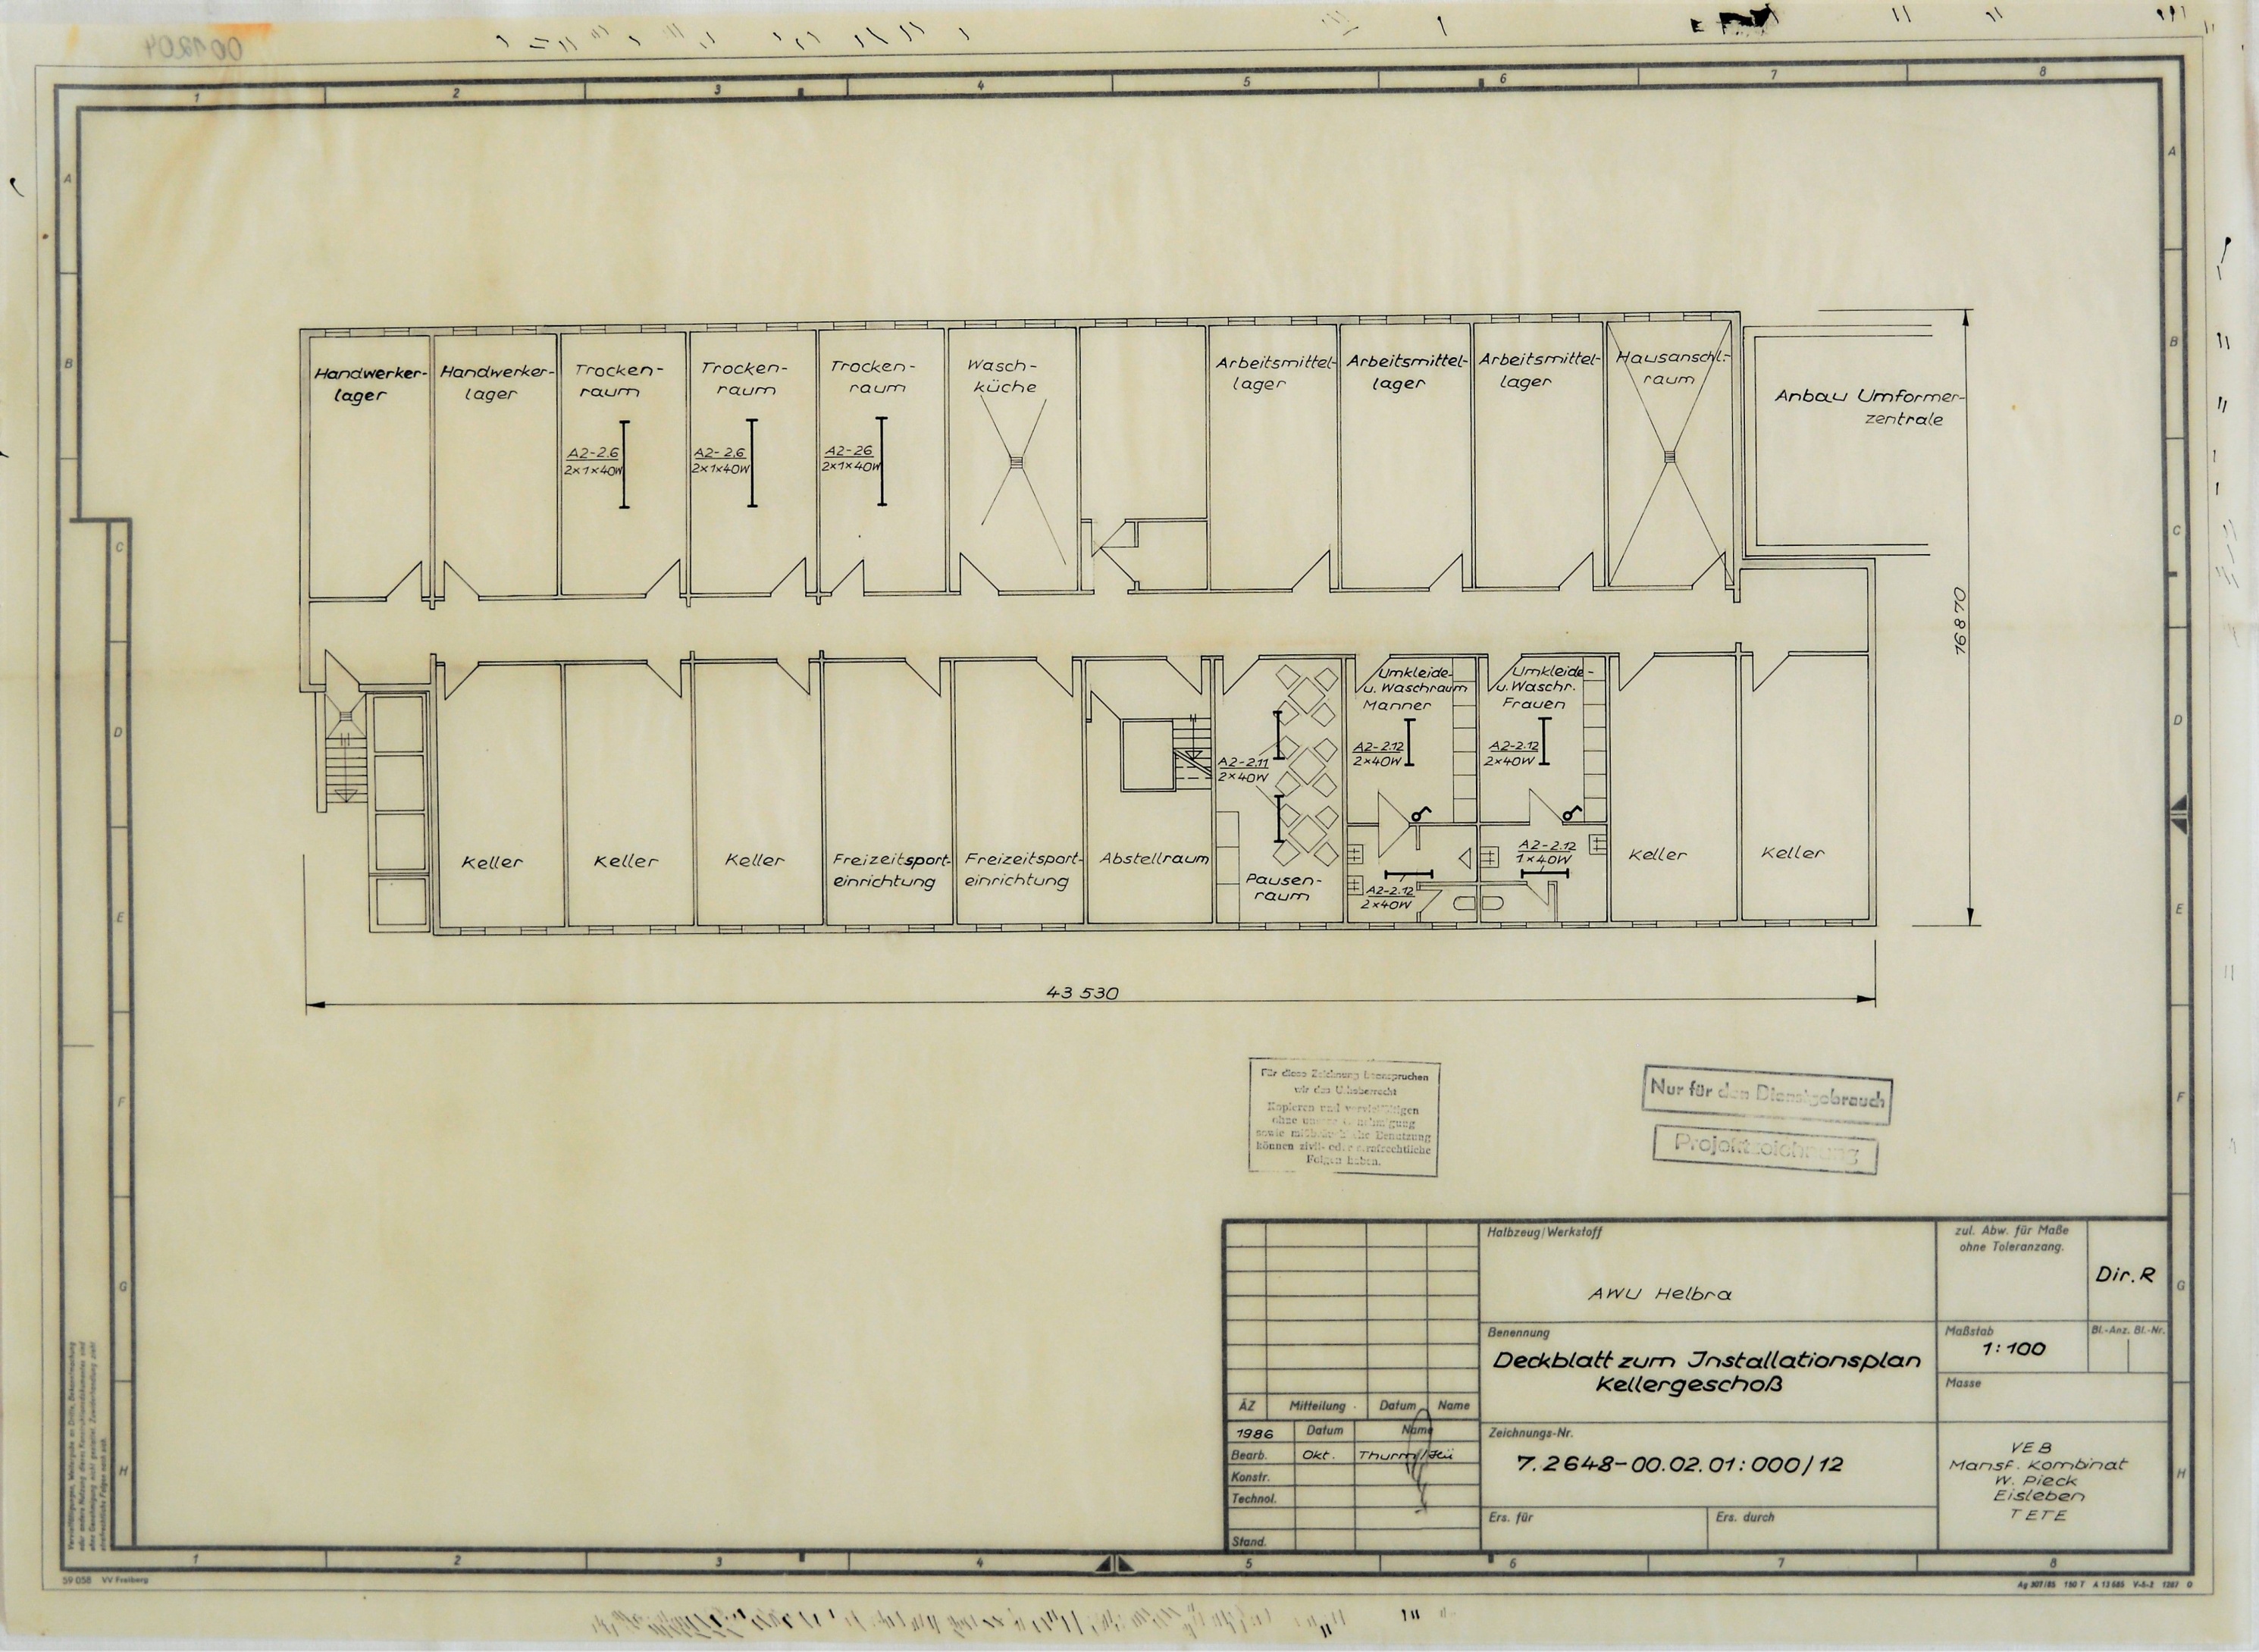 AWU Helbra Deckblatt zum Installationsplan Kellergeschoss. (Mansfeld-Museum im Humboldtschloss CC BY-NC-SA)